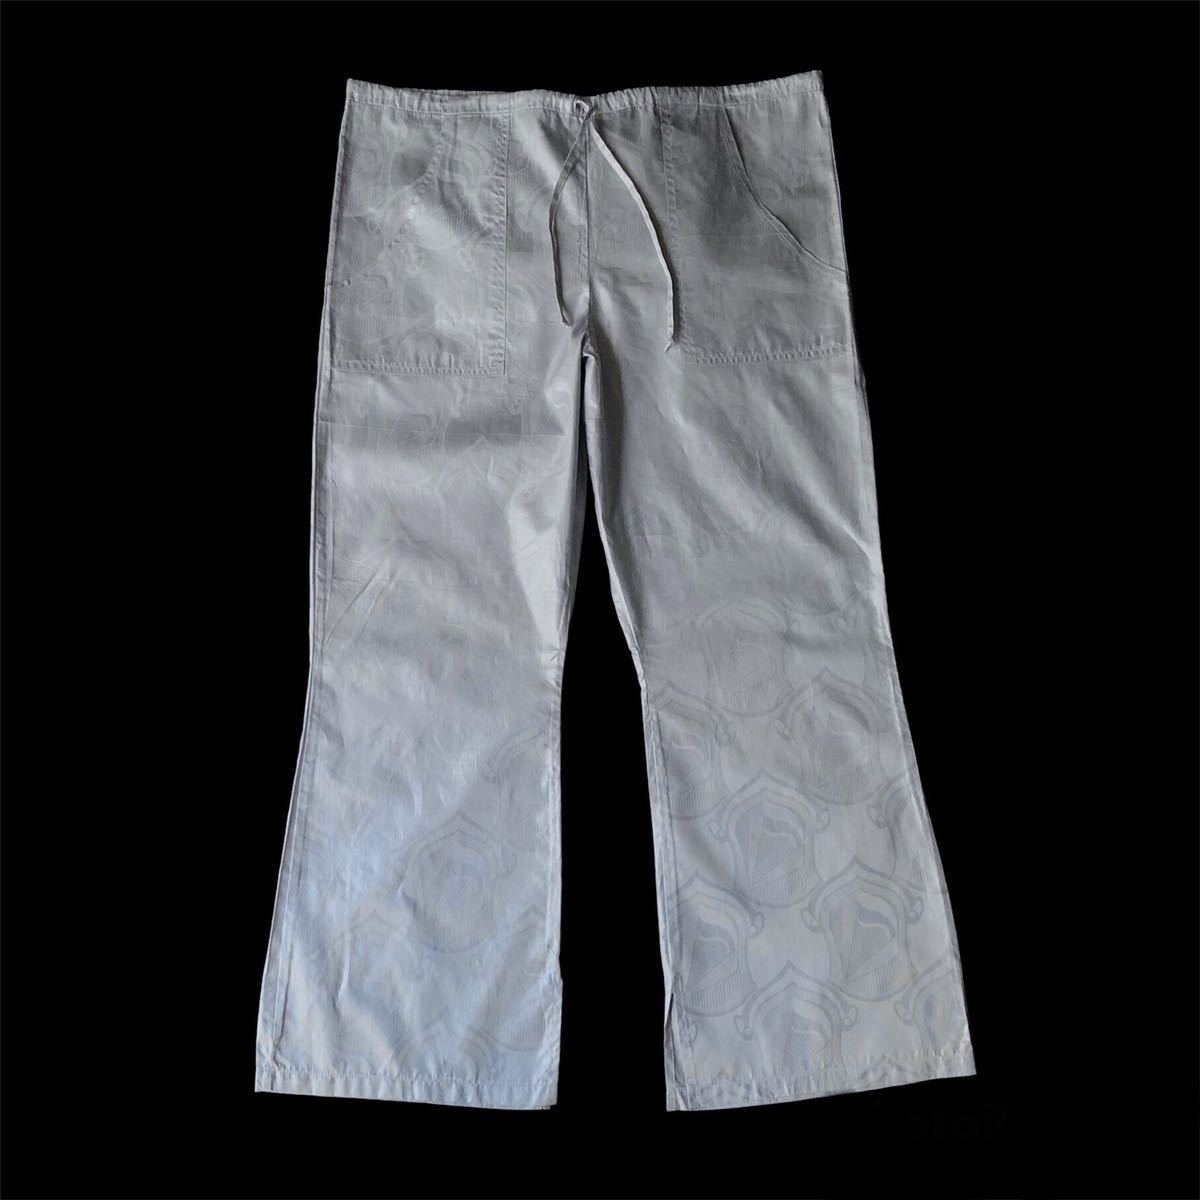 夏セール開催中 MAX80%OFF！ made Pants Easy Flared Cotton Unknown 90s？ in ヴィンテージ vintage アメリカ製 総柄イージーパンツ フレア コットン 90年代？ USA XLサイズ以上